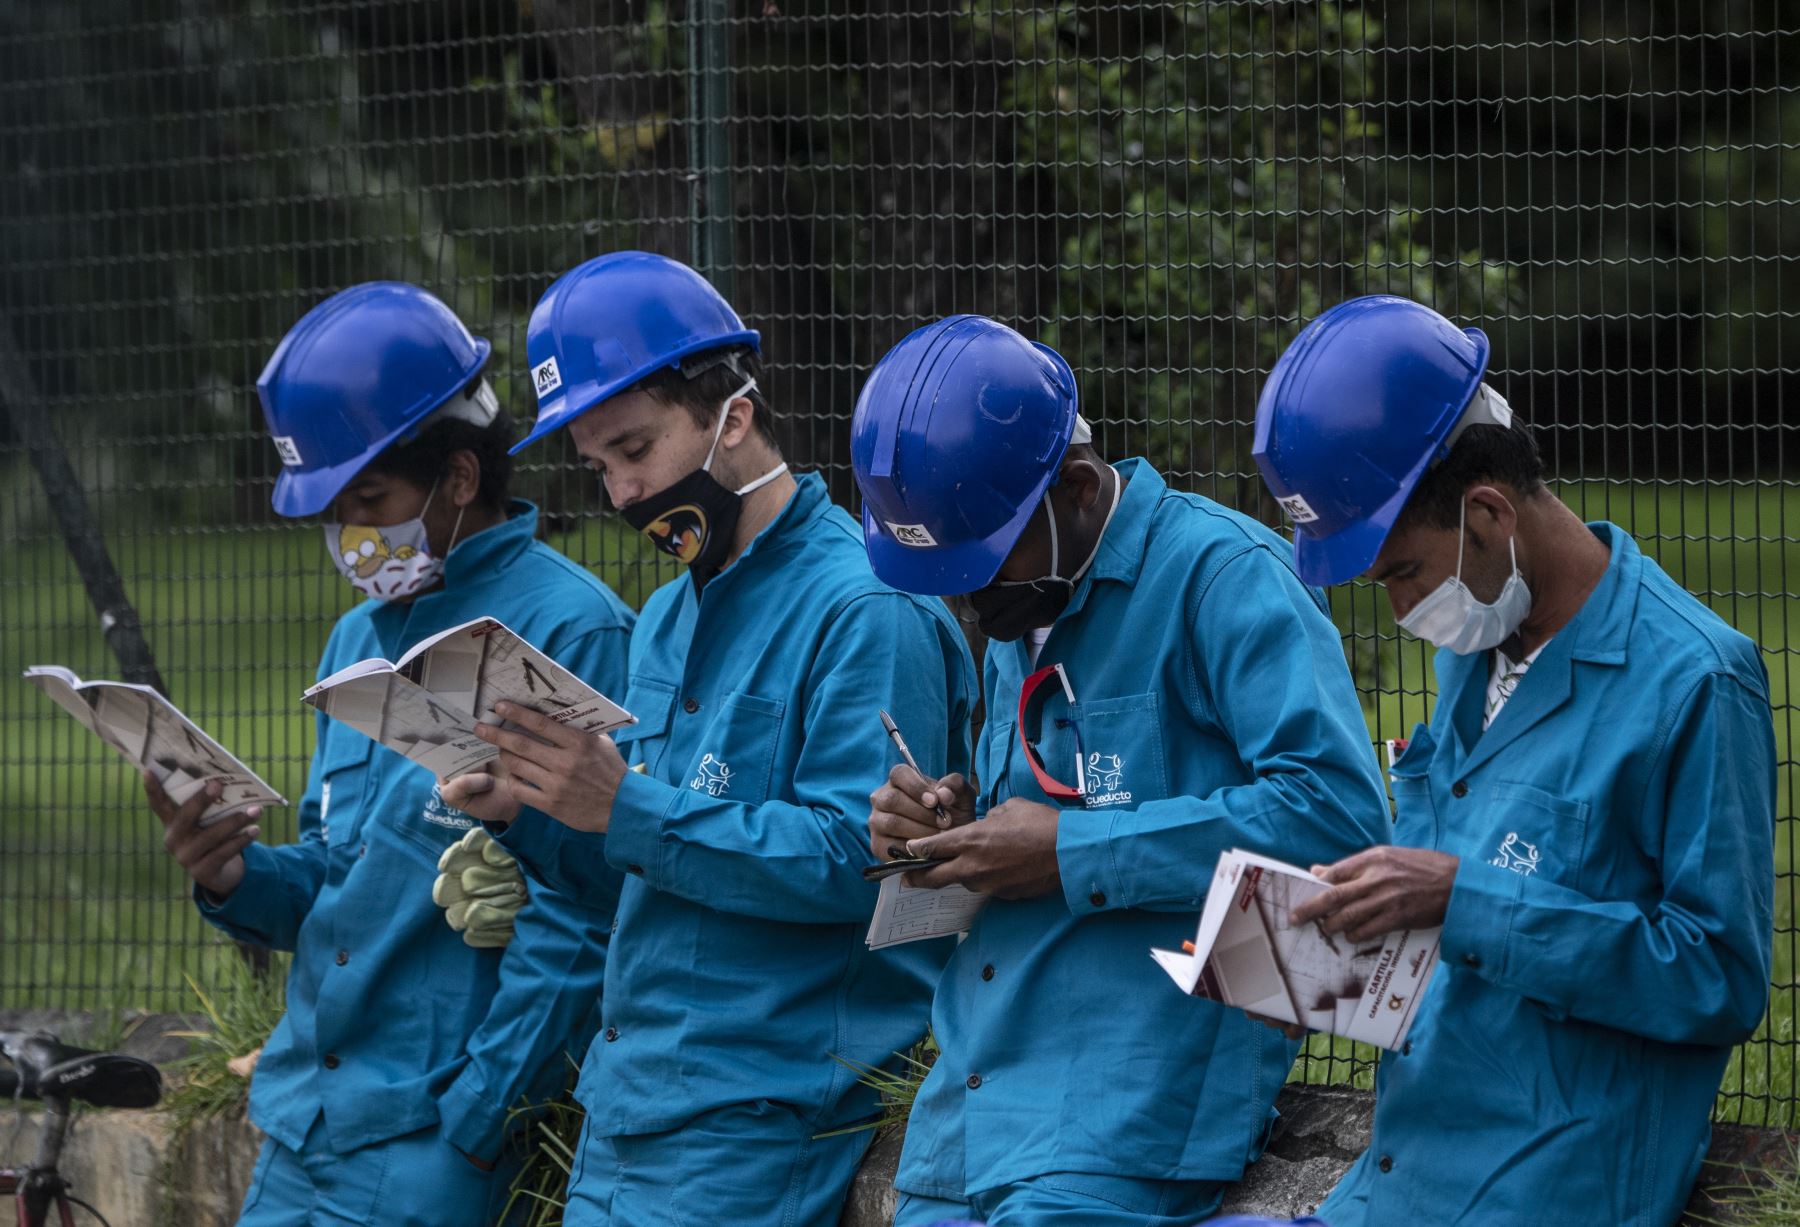 Los trabajadores de la construcción que leen usan una máscara facial, afuera de un centro comercial durante la pandemia de coronavirus COVID-19, en Bogotá. Foto: AFP